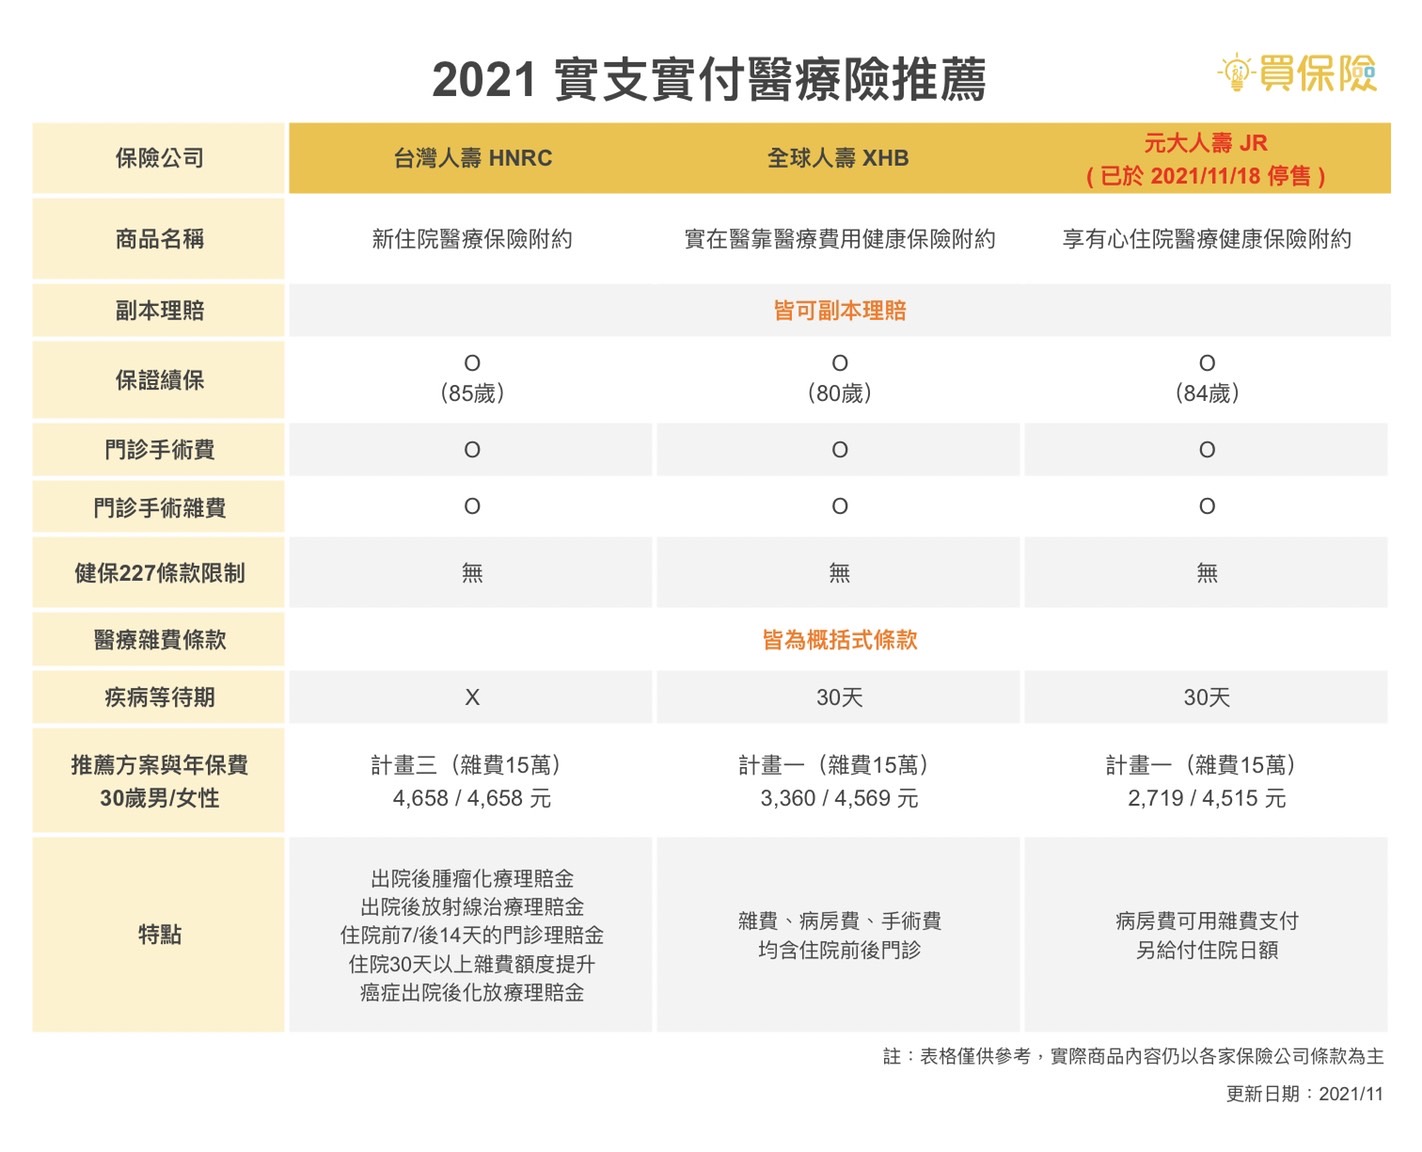 2021 實支實付醫療險推薦：台灣人壽HNRC新住院醫療保險附約、全球人壽 XHB實在醫靠醫療費用健康保險附約、元大人壽 JR享有心住院醫療健康保險附約